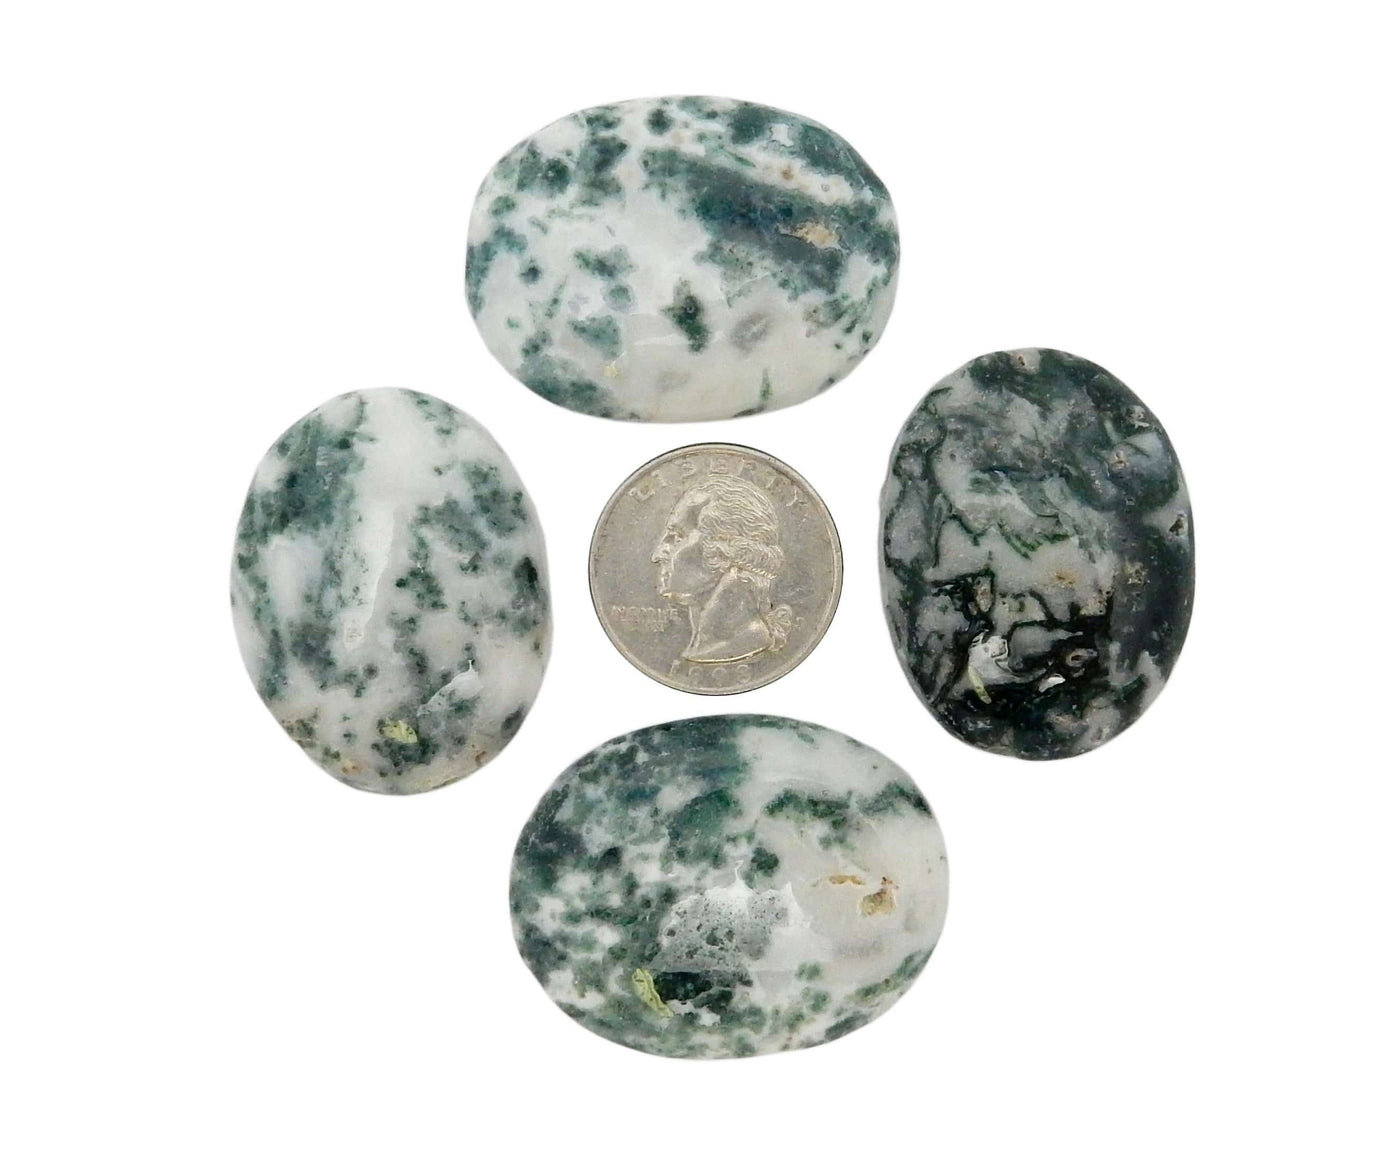 4 moss agate worry stones around a quarter